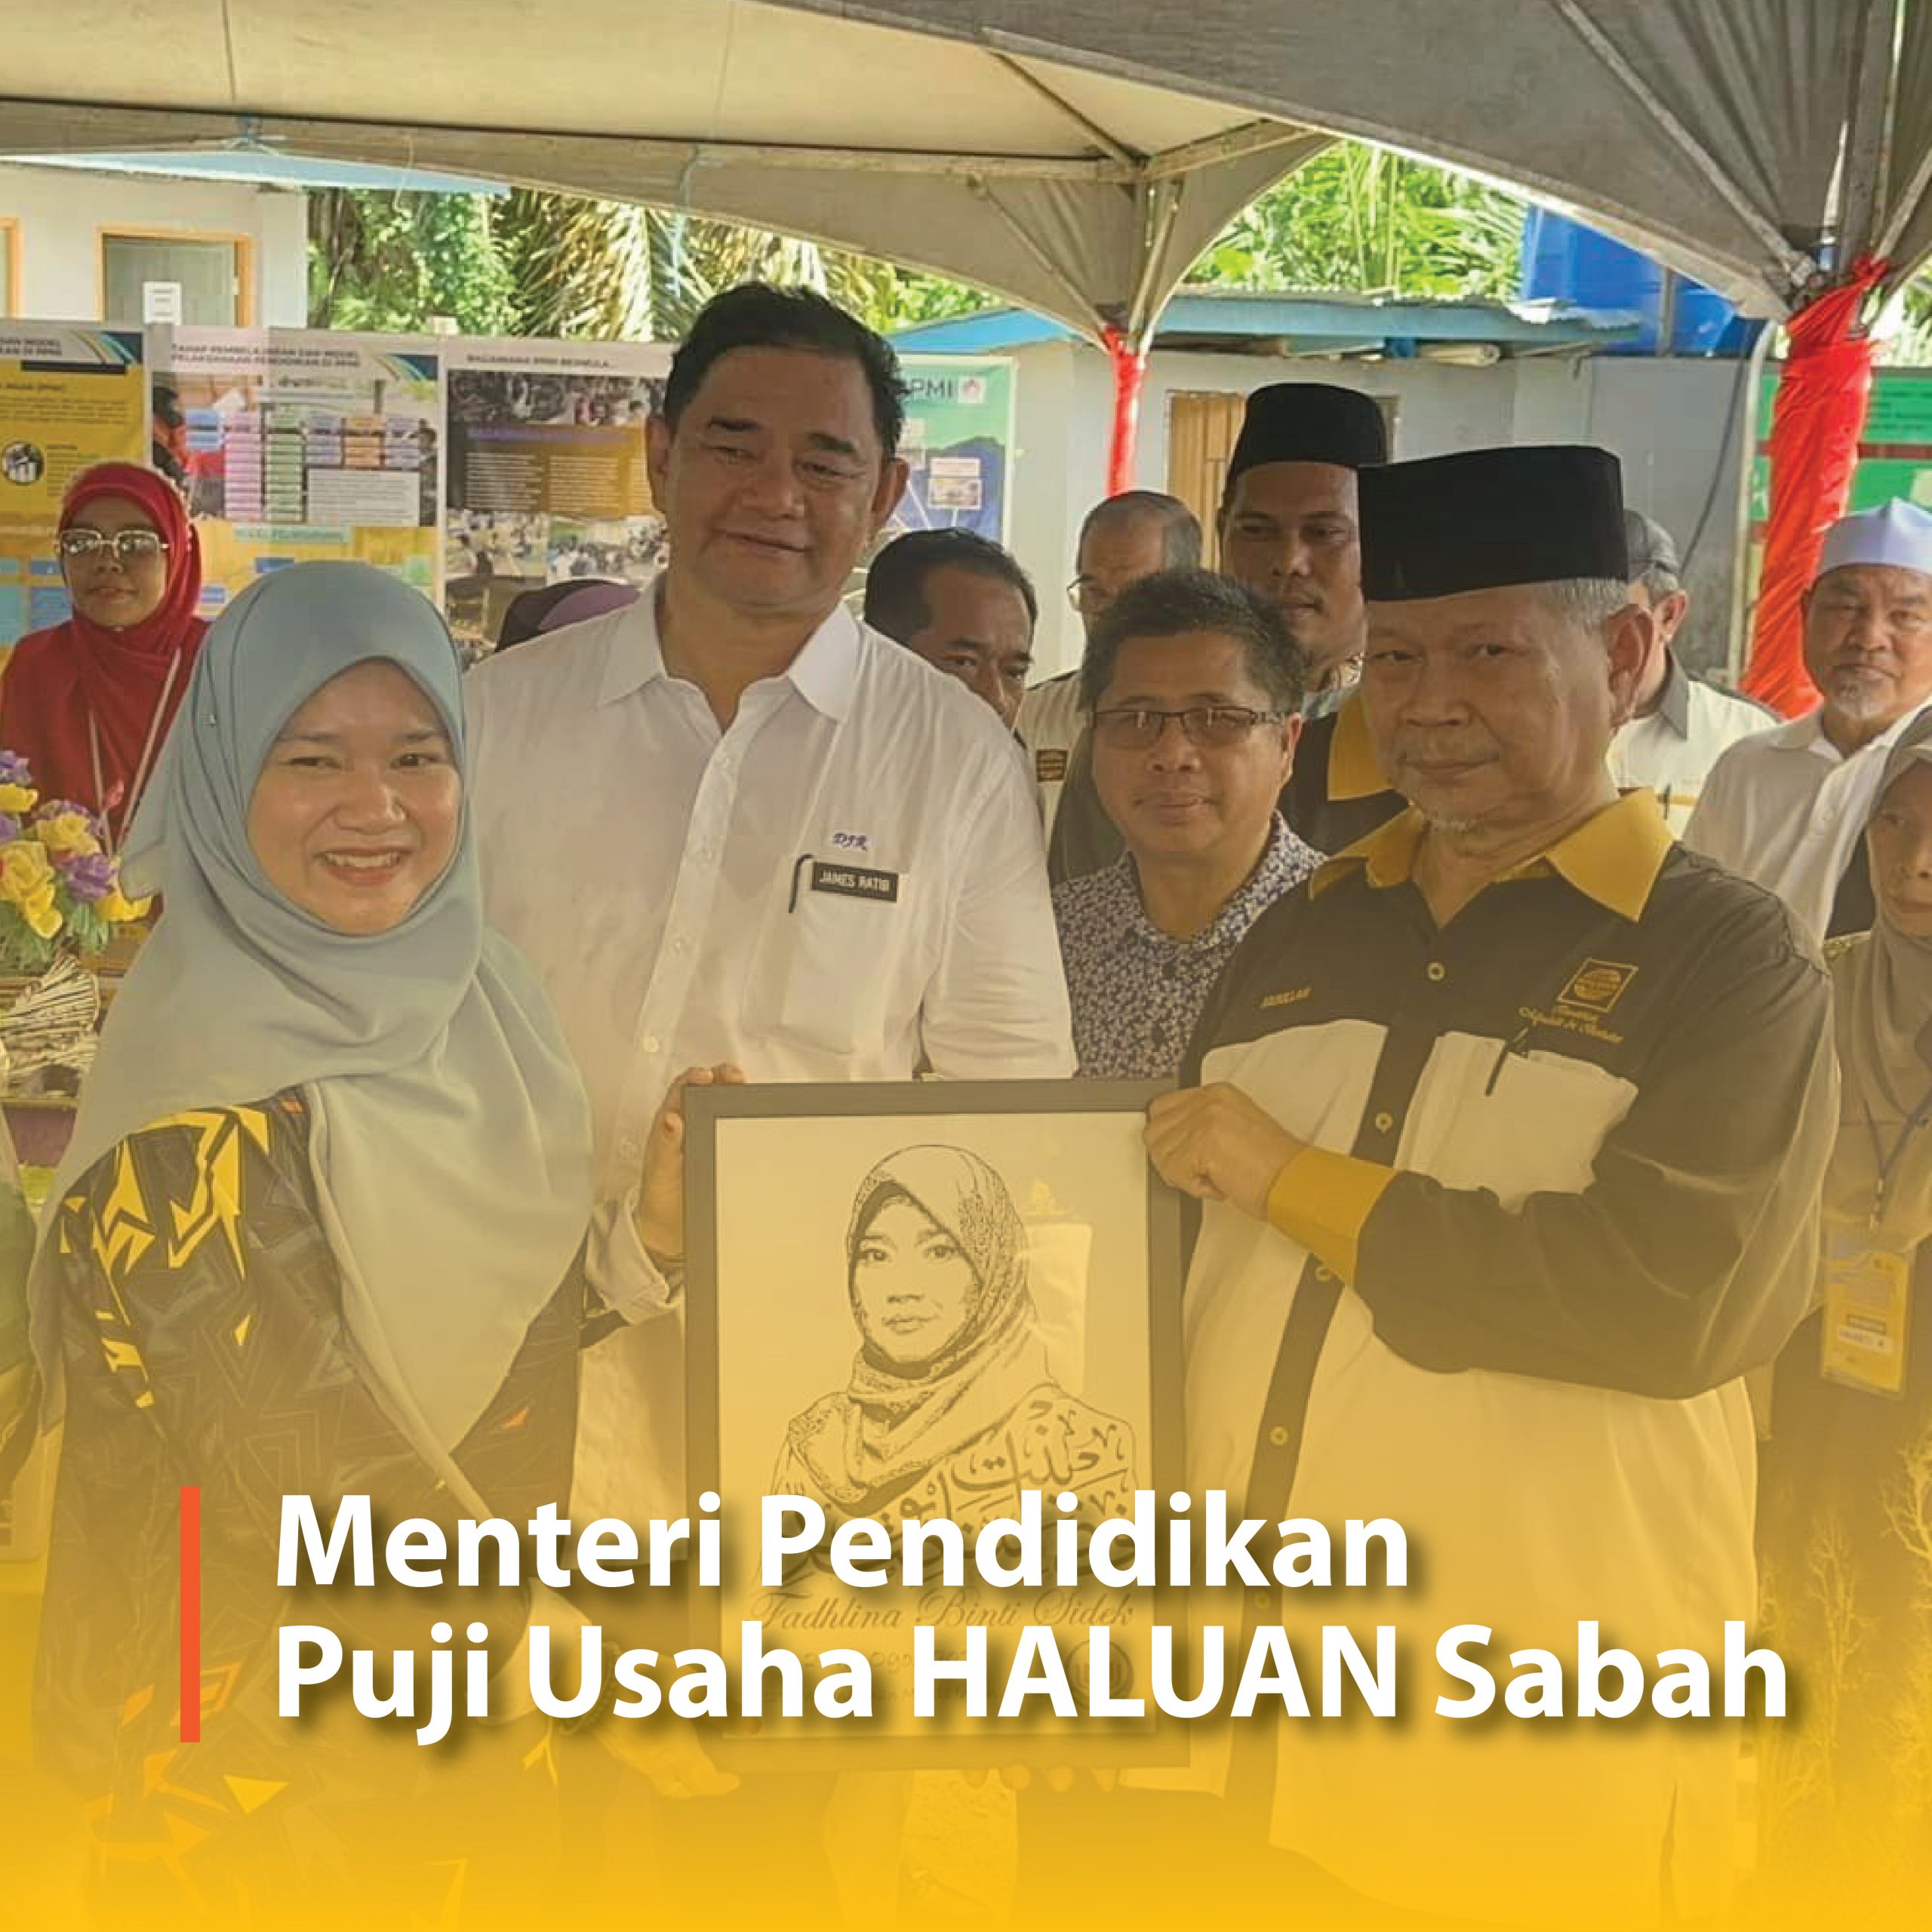 Menteri Pendidikan Puji Usaha HALUAN Sabah